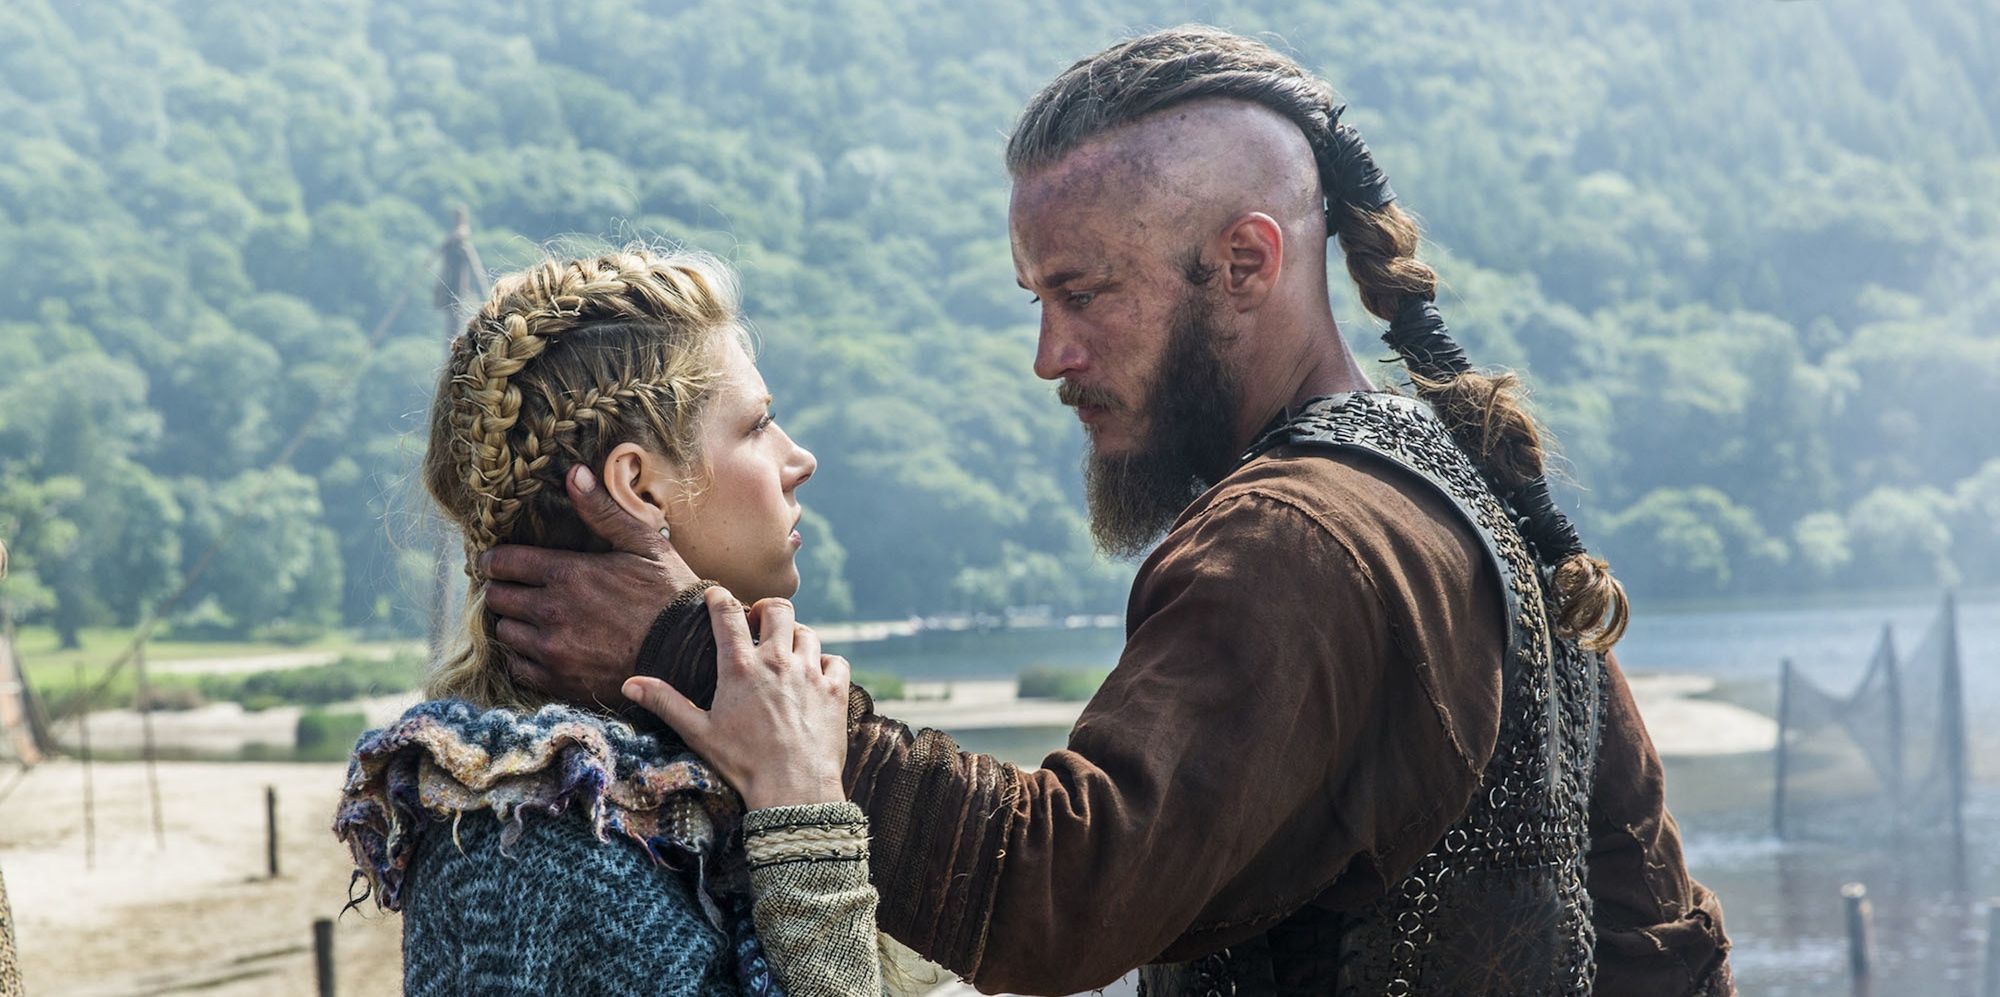 Vikings Portugal - TEORIA  Vai o Ragnar morrer no último episódio?  (Atenção: O texto seguinte não passa de uma teoria mas pode conter SPOILERS  do próximo episódio) Not the living but